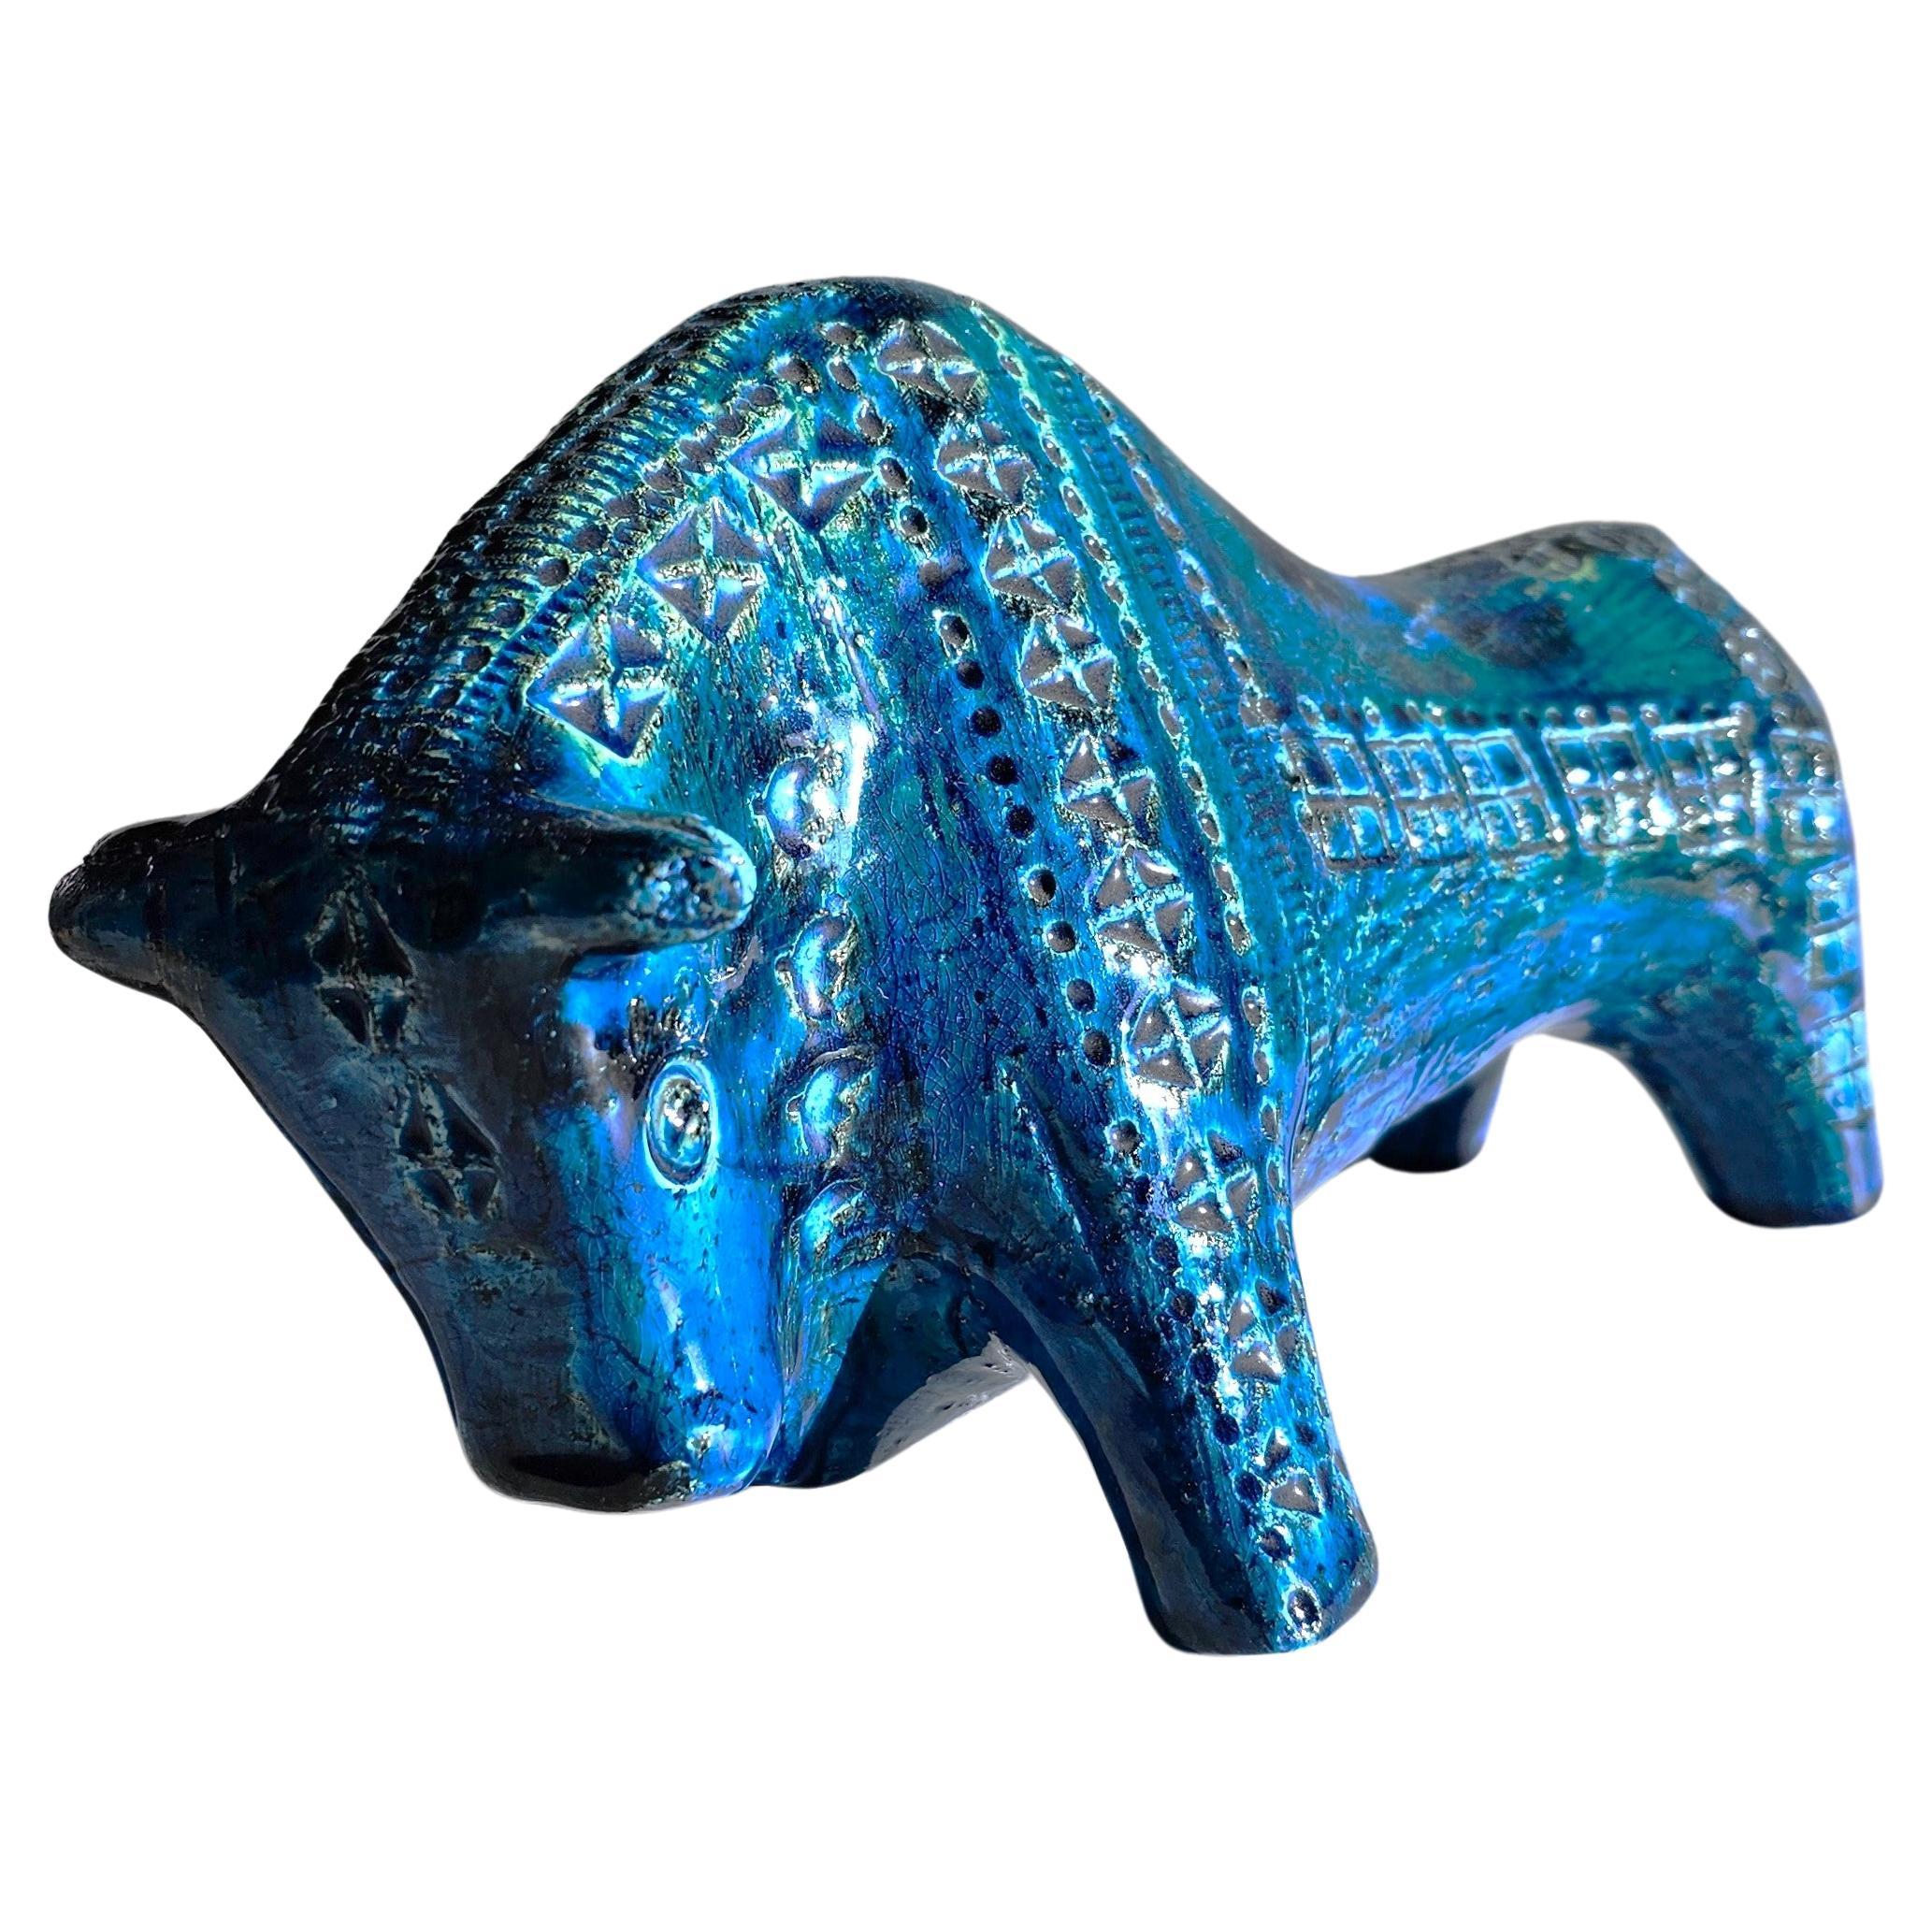 Aldo Londi for Bitossi Ceramiche Rimini Blu Series, Modernist Bull Sculpture